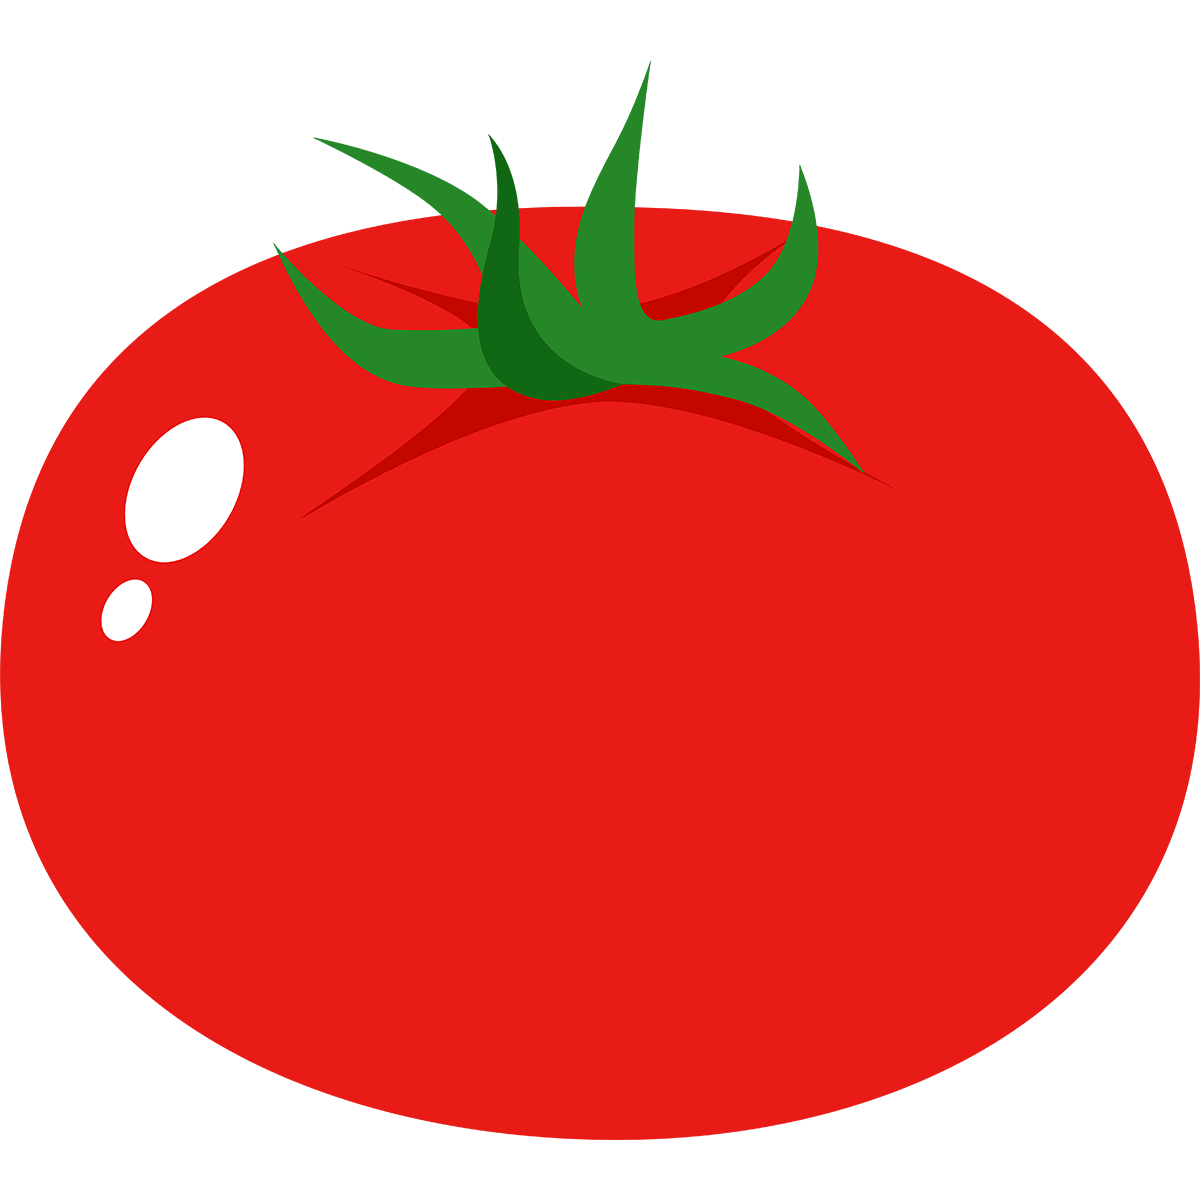 赤いトマトの無料イラスト